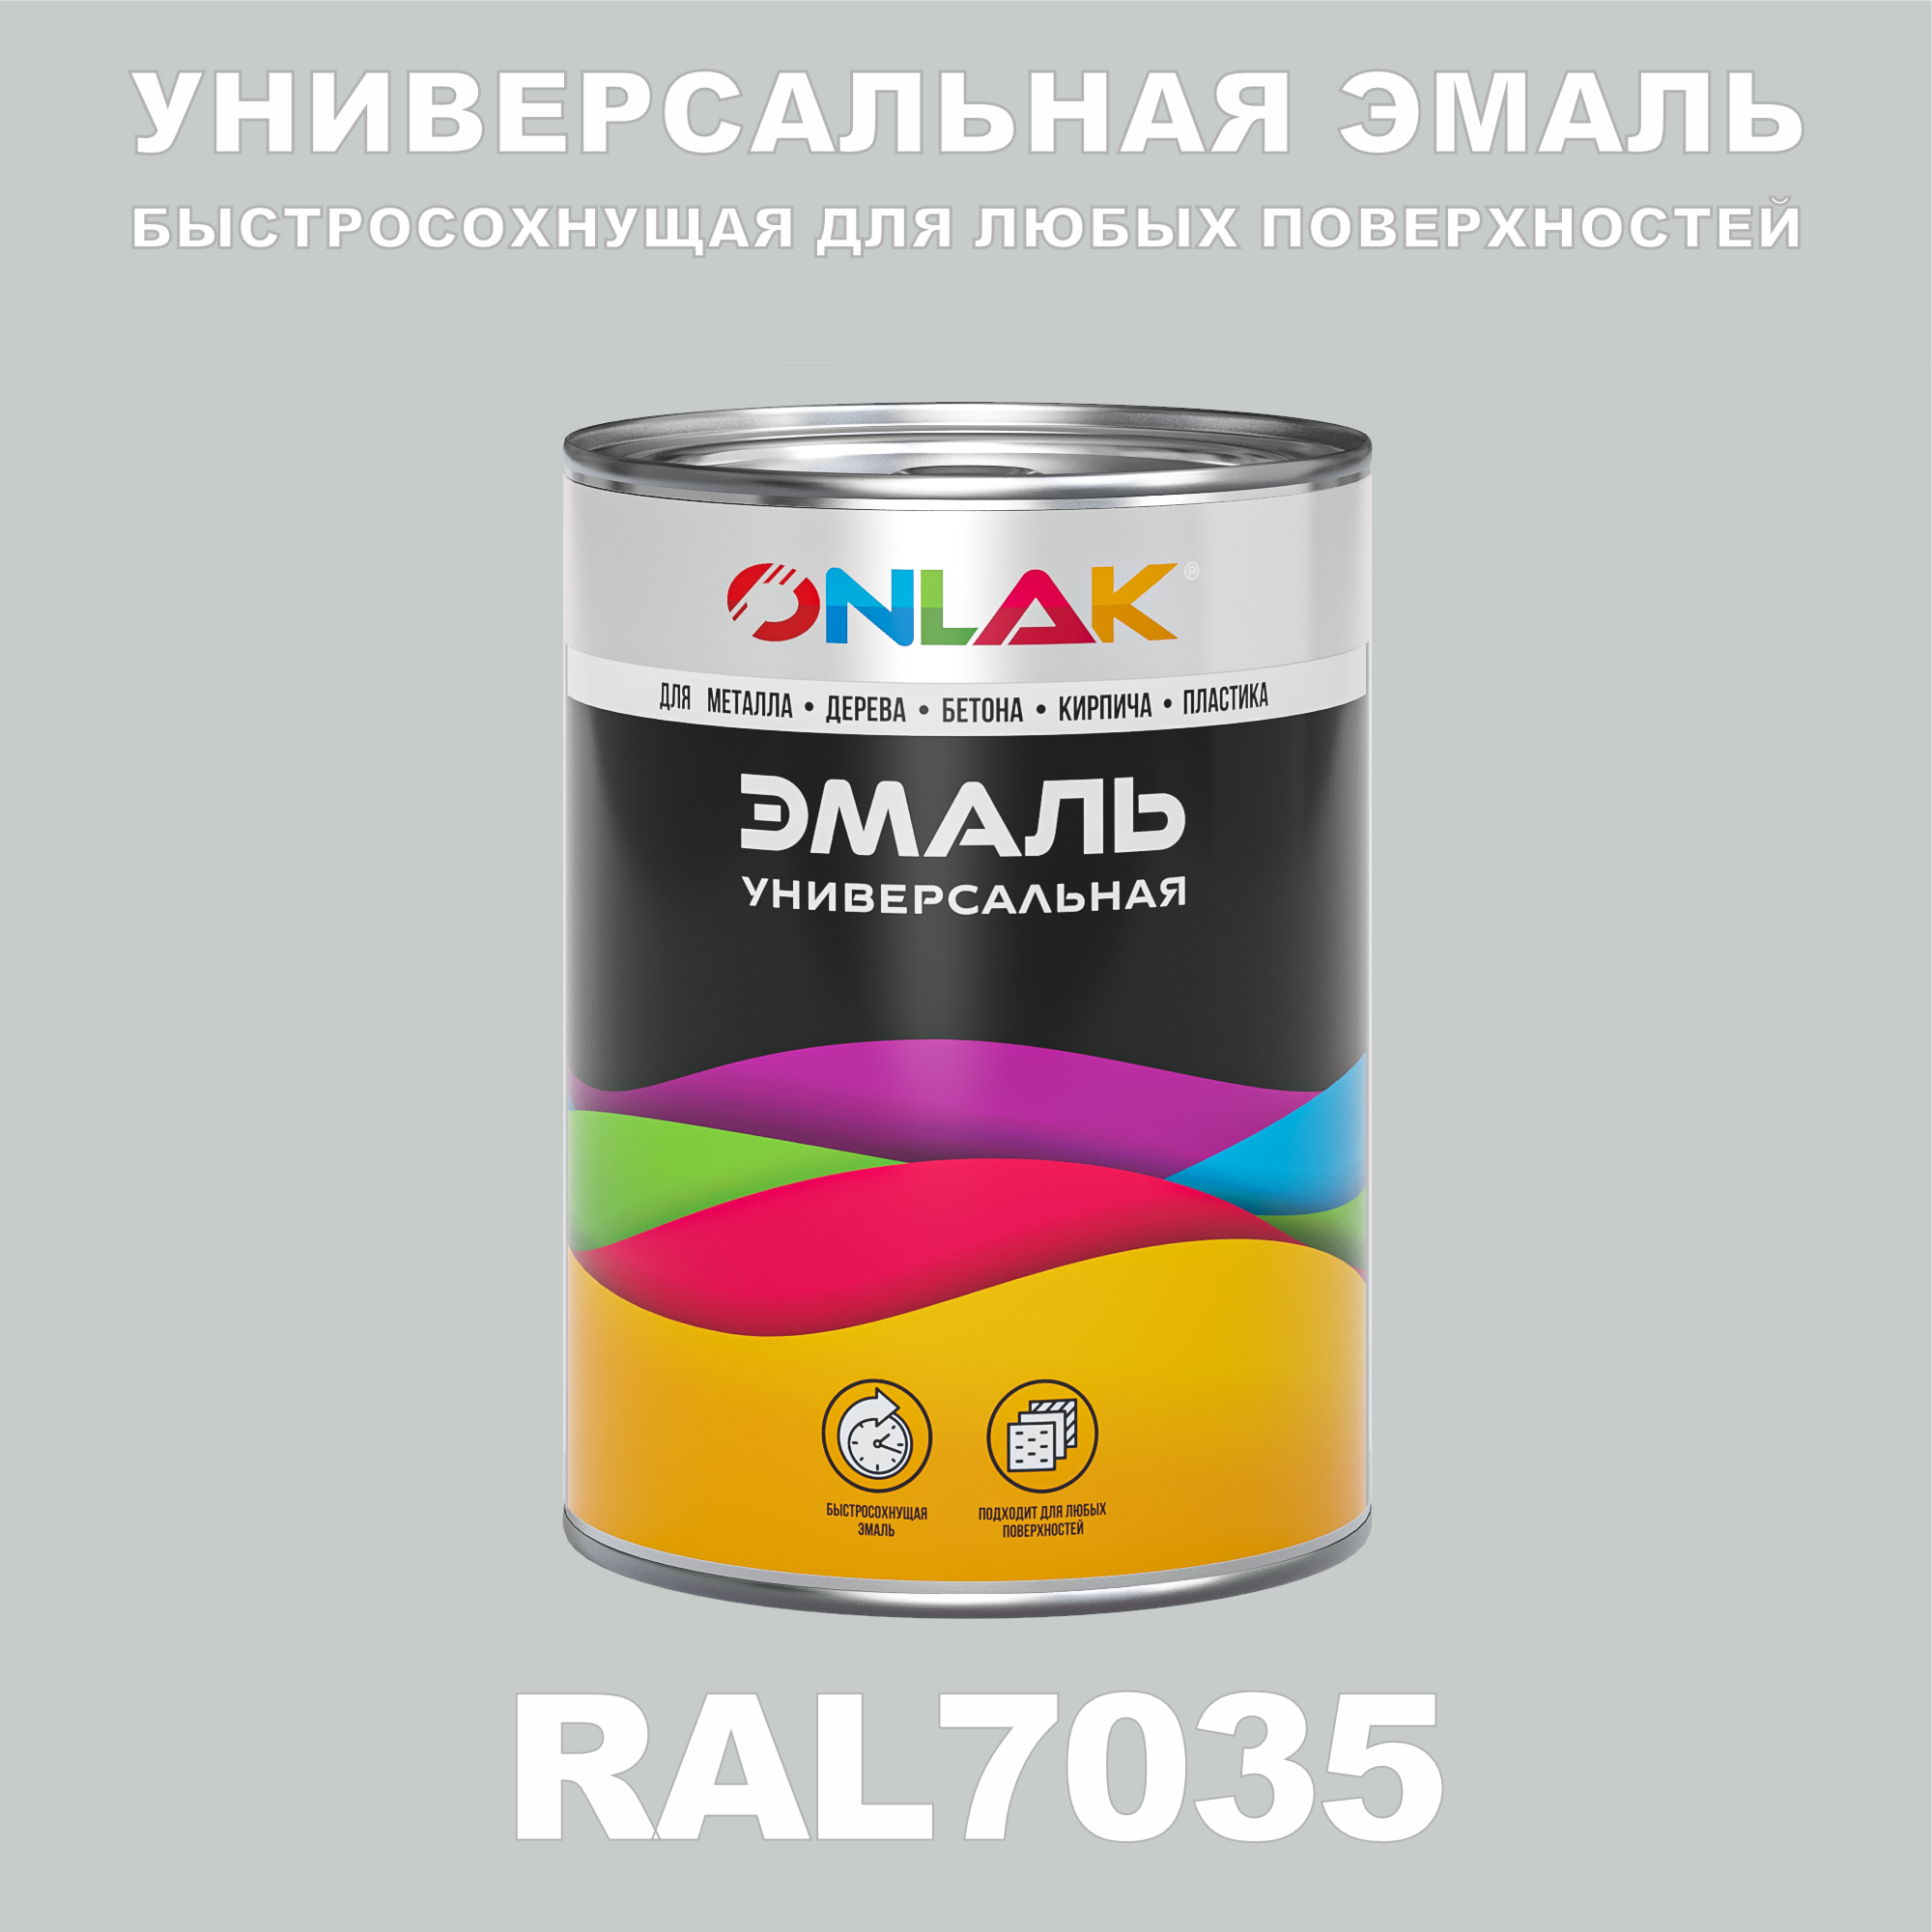 Эмаль ONLAK Универсальная RAL7035 по металлу по ржавчине для дерева бетона пластика универсальная банка mallony